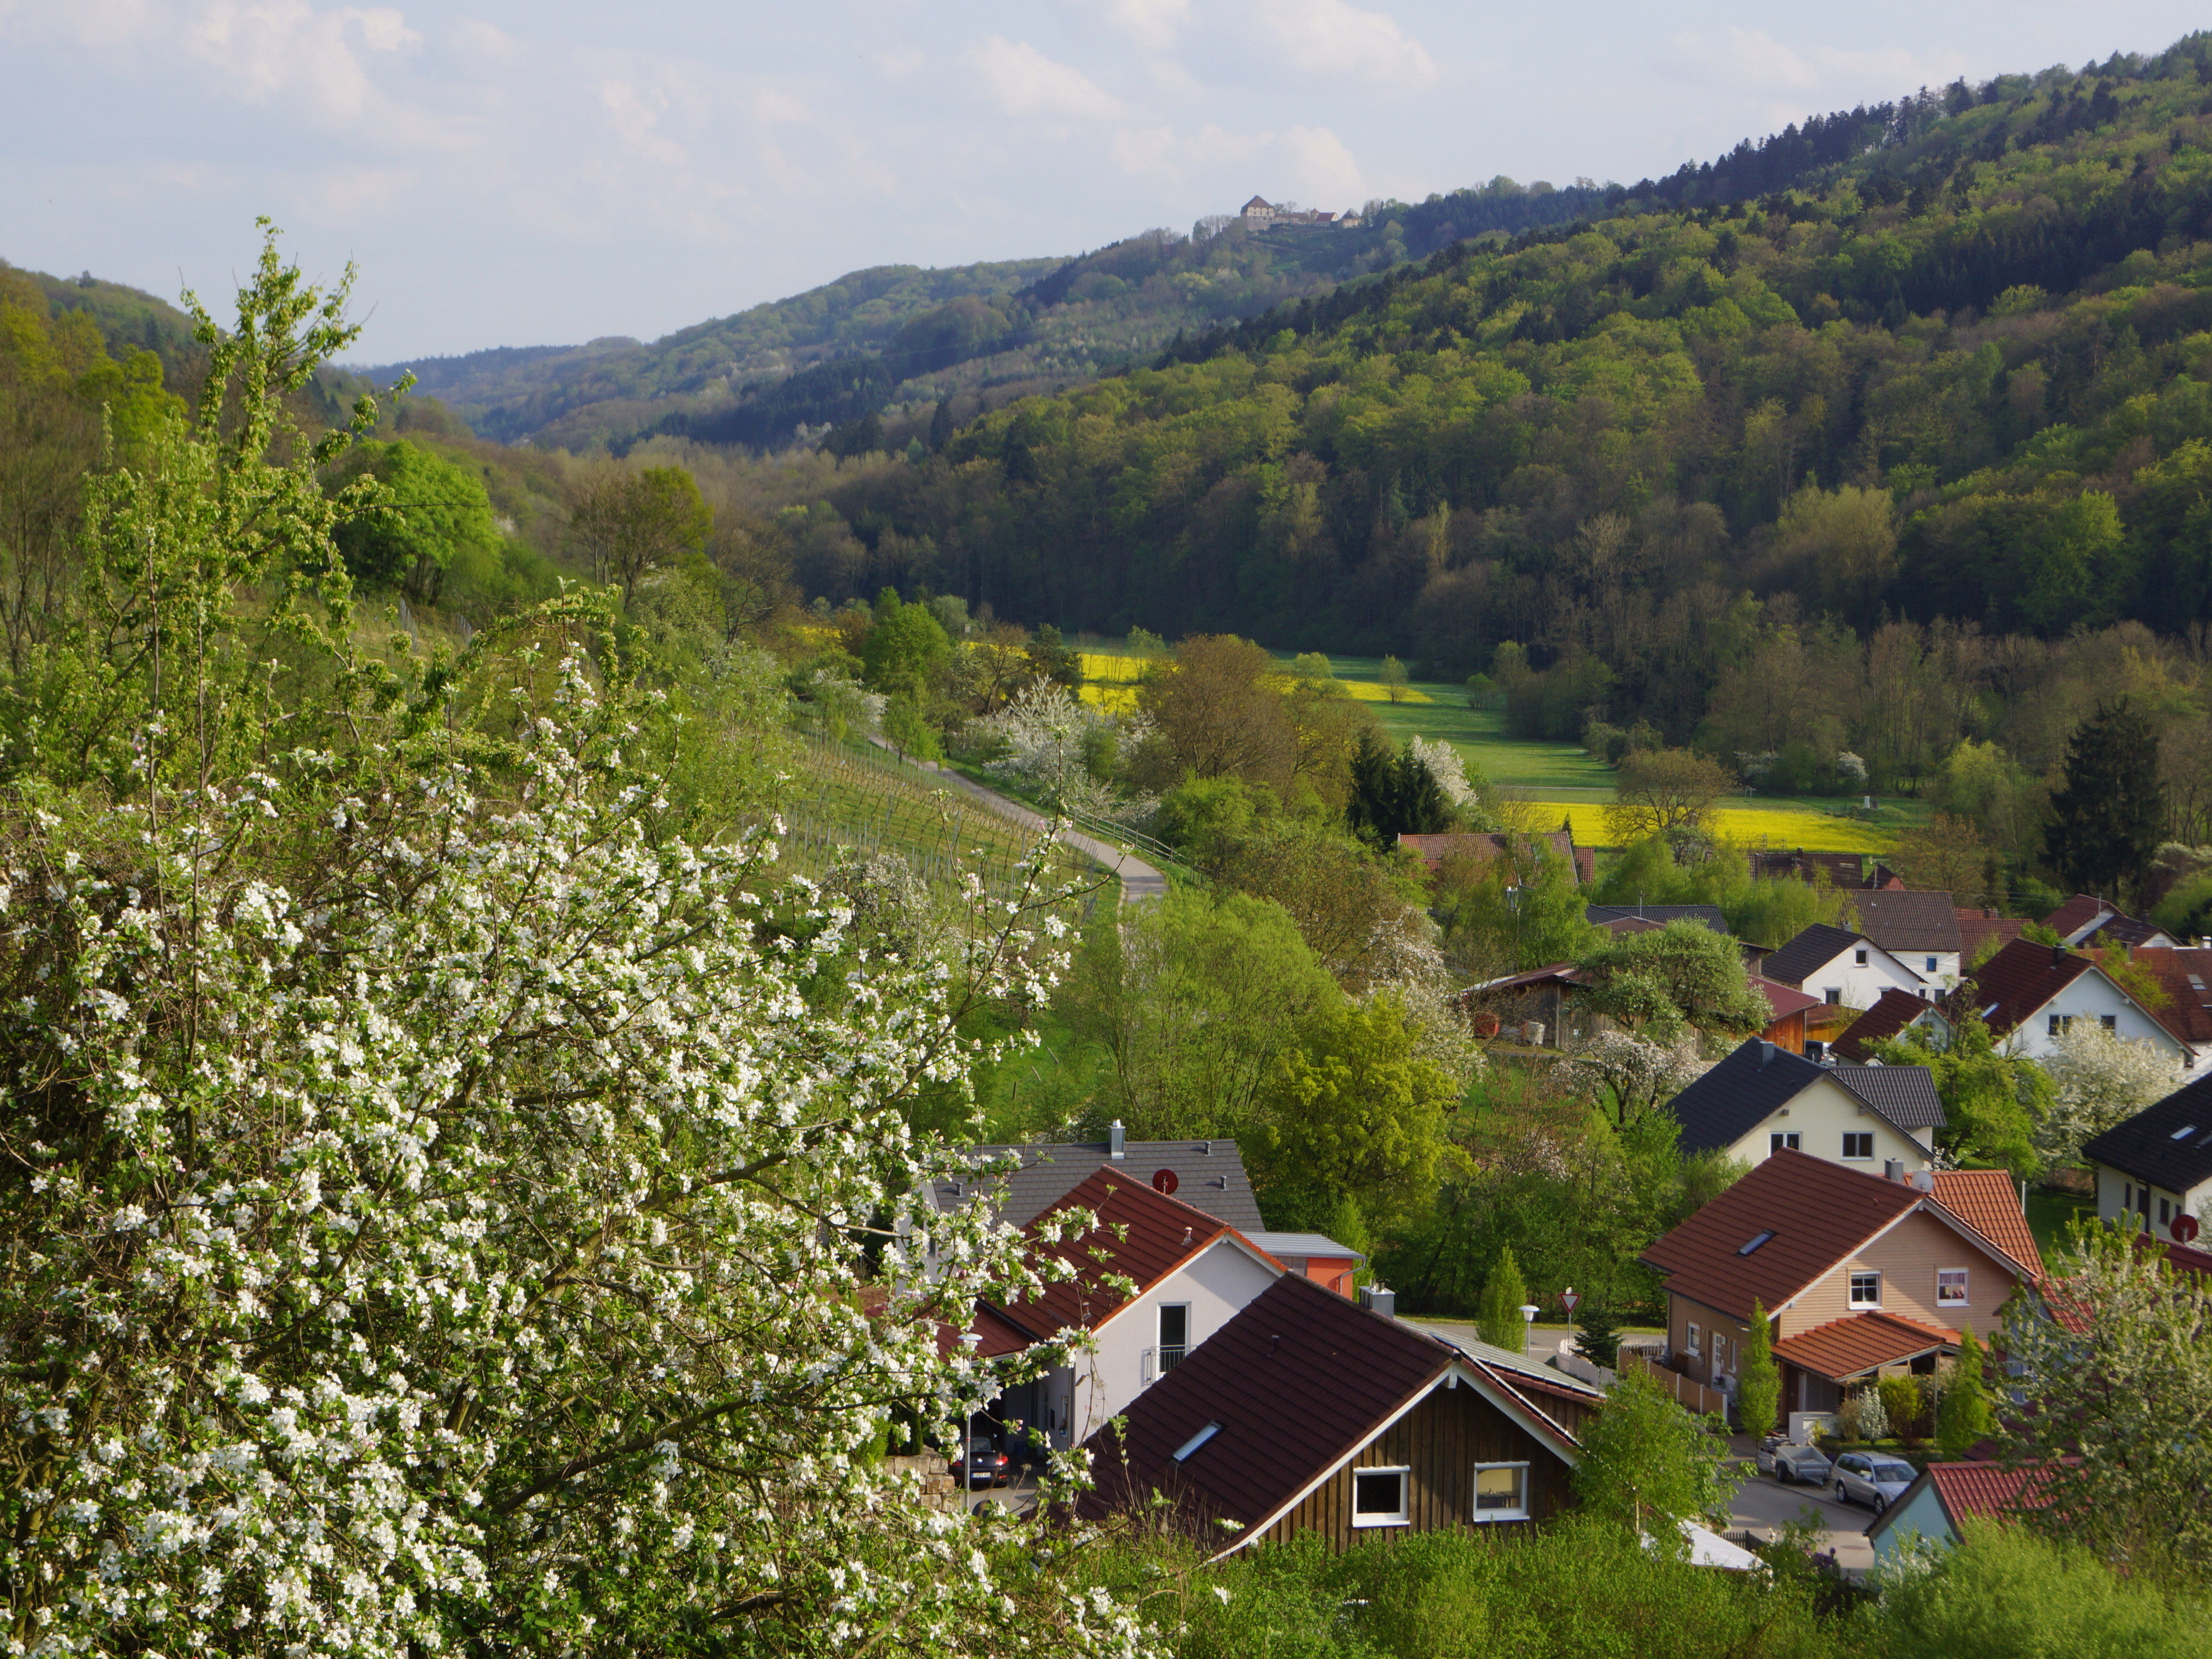  Blick von Geddelsbach zur Burg Maienfels 